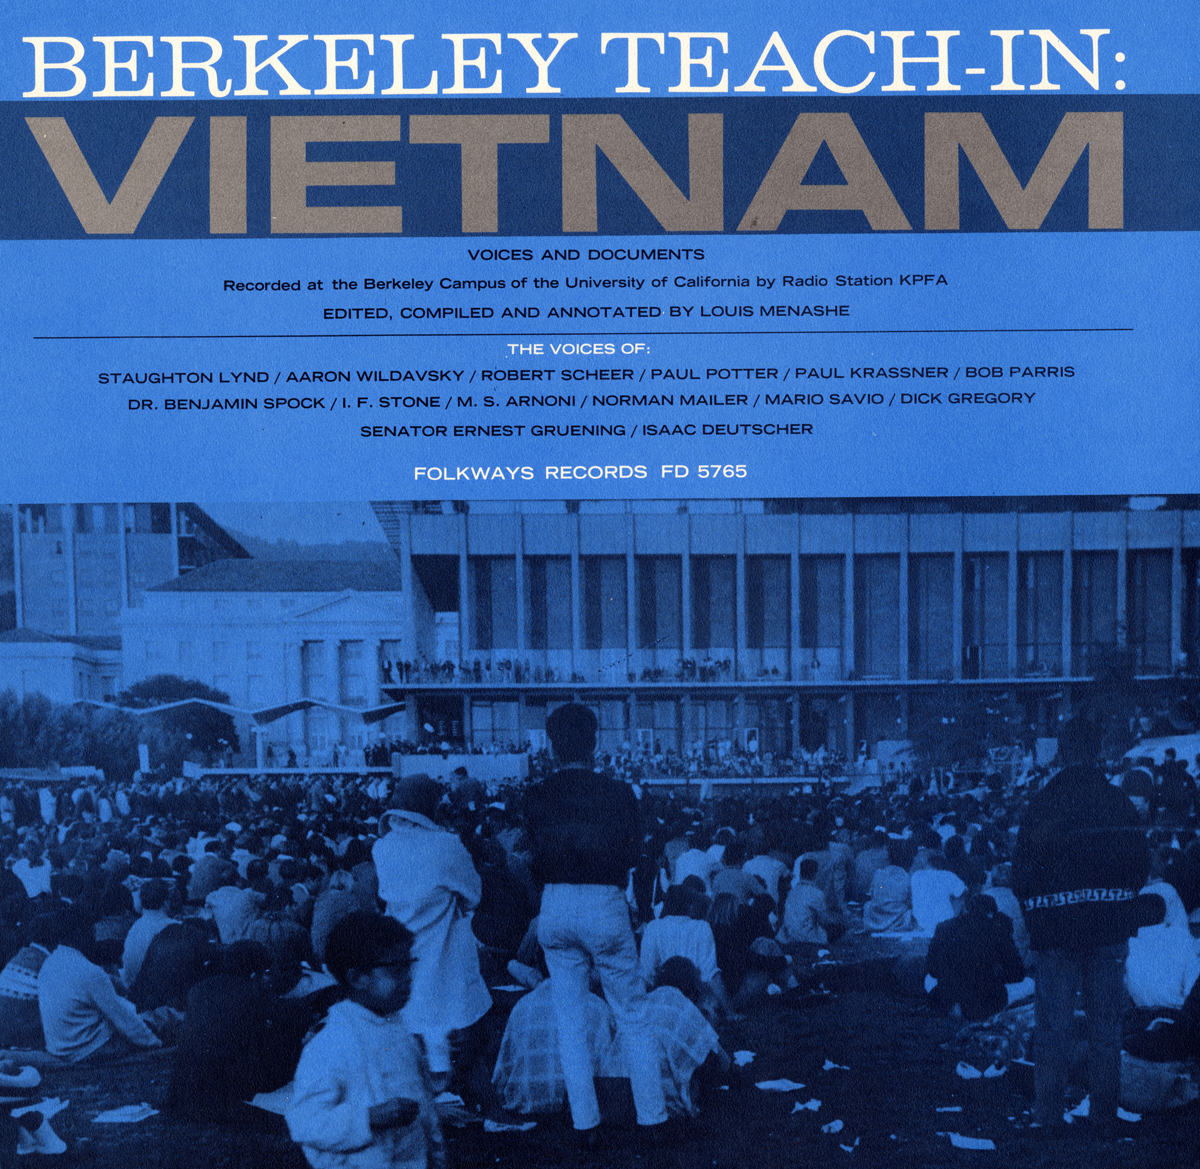 BERKELEY TEACH-IN VIETNAM / VA